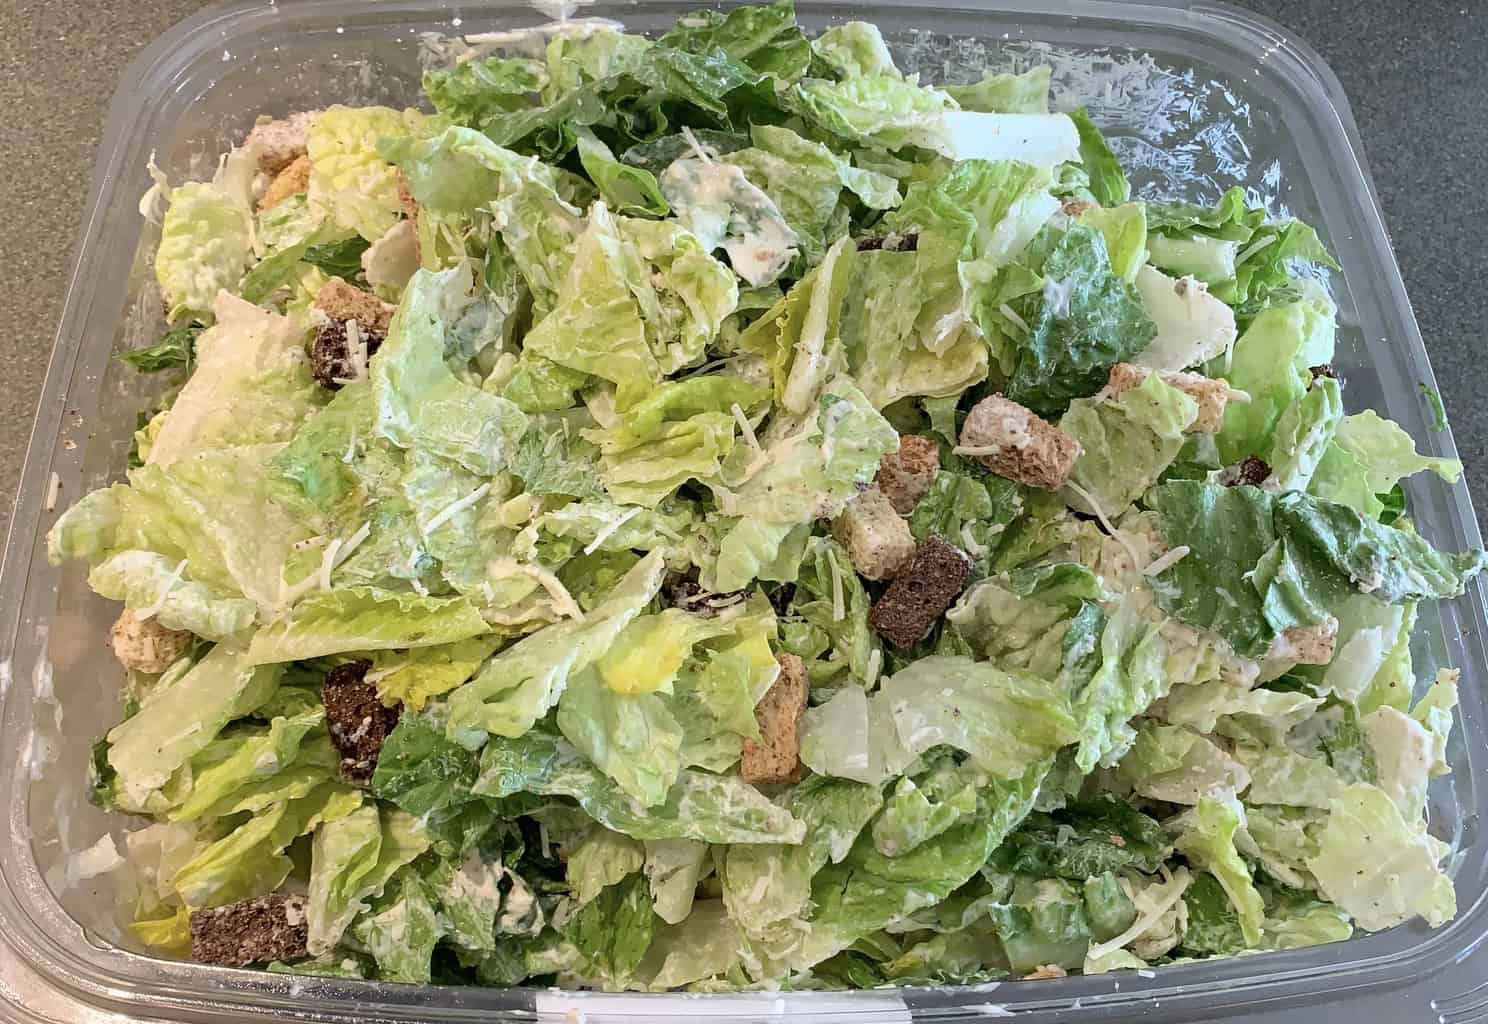 Costco Kirkland Signature Caesar Salad Review Costcuisine